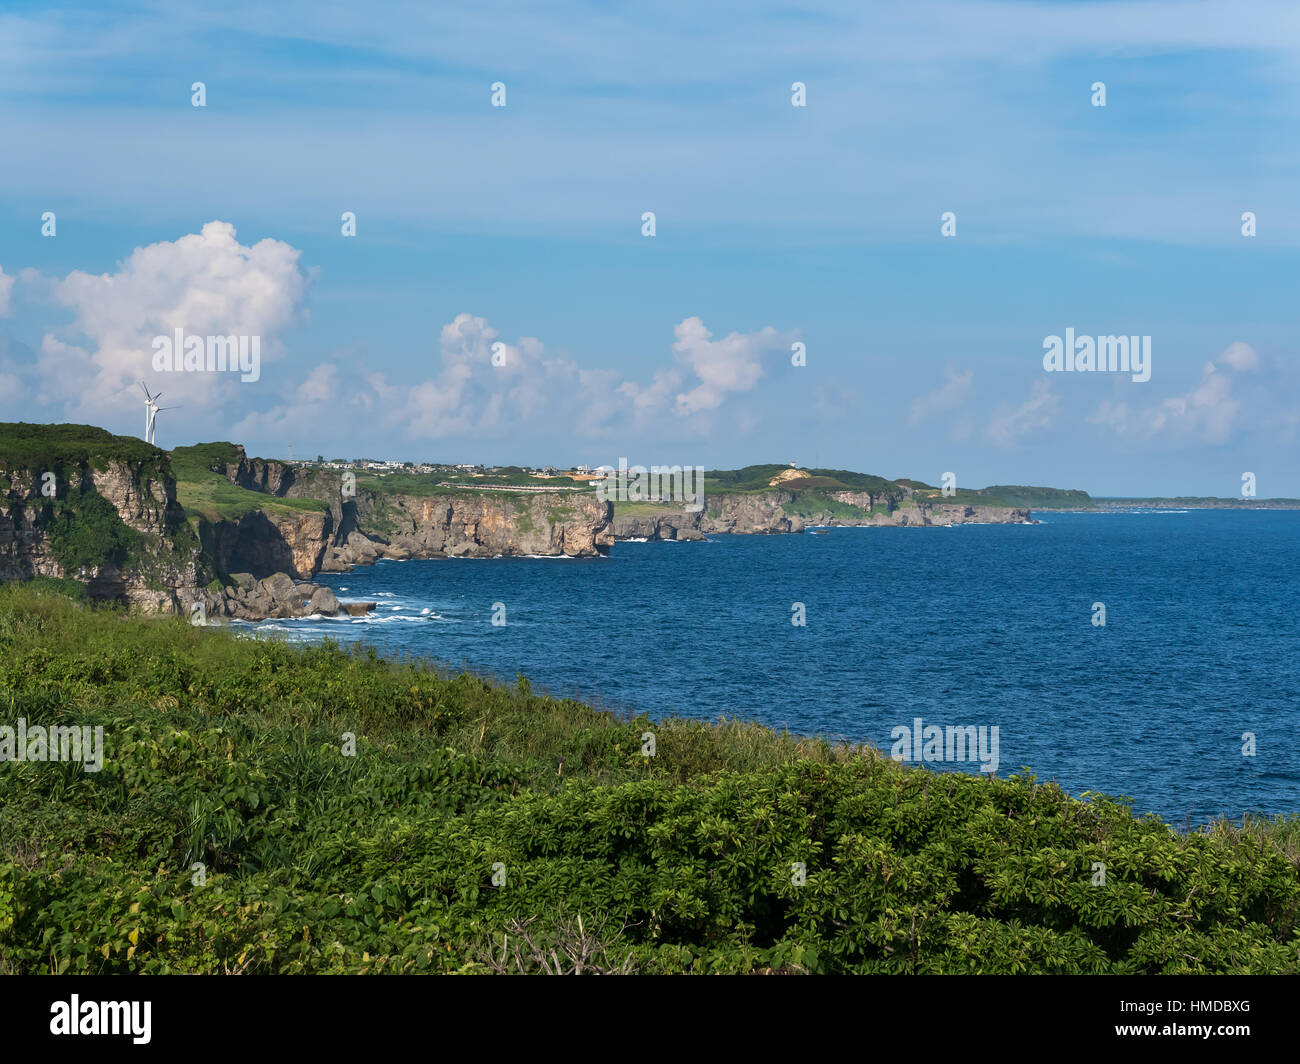 Nanamata Coast and Cape of Higashi Henna Zaki of Miyako Island in Okinawa, Japan. Stock Photo